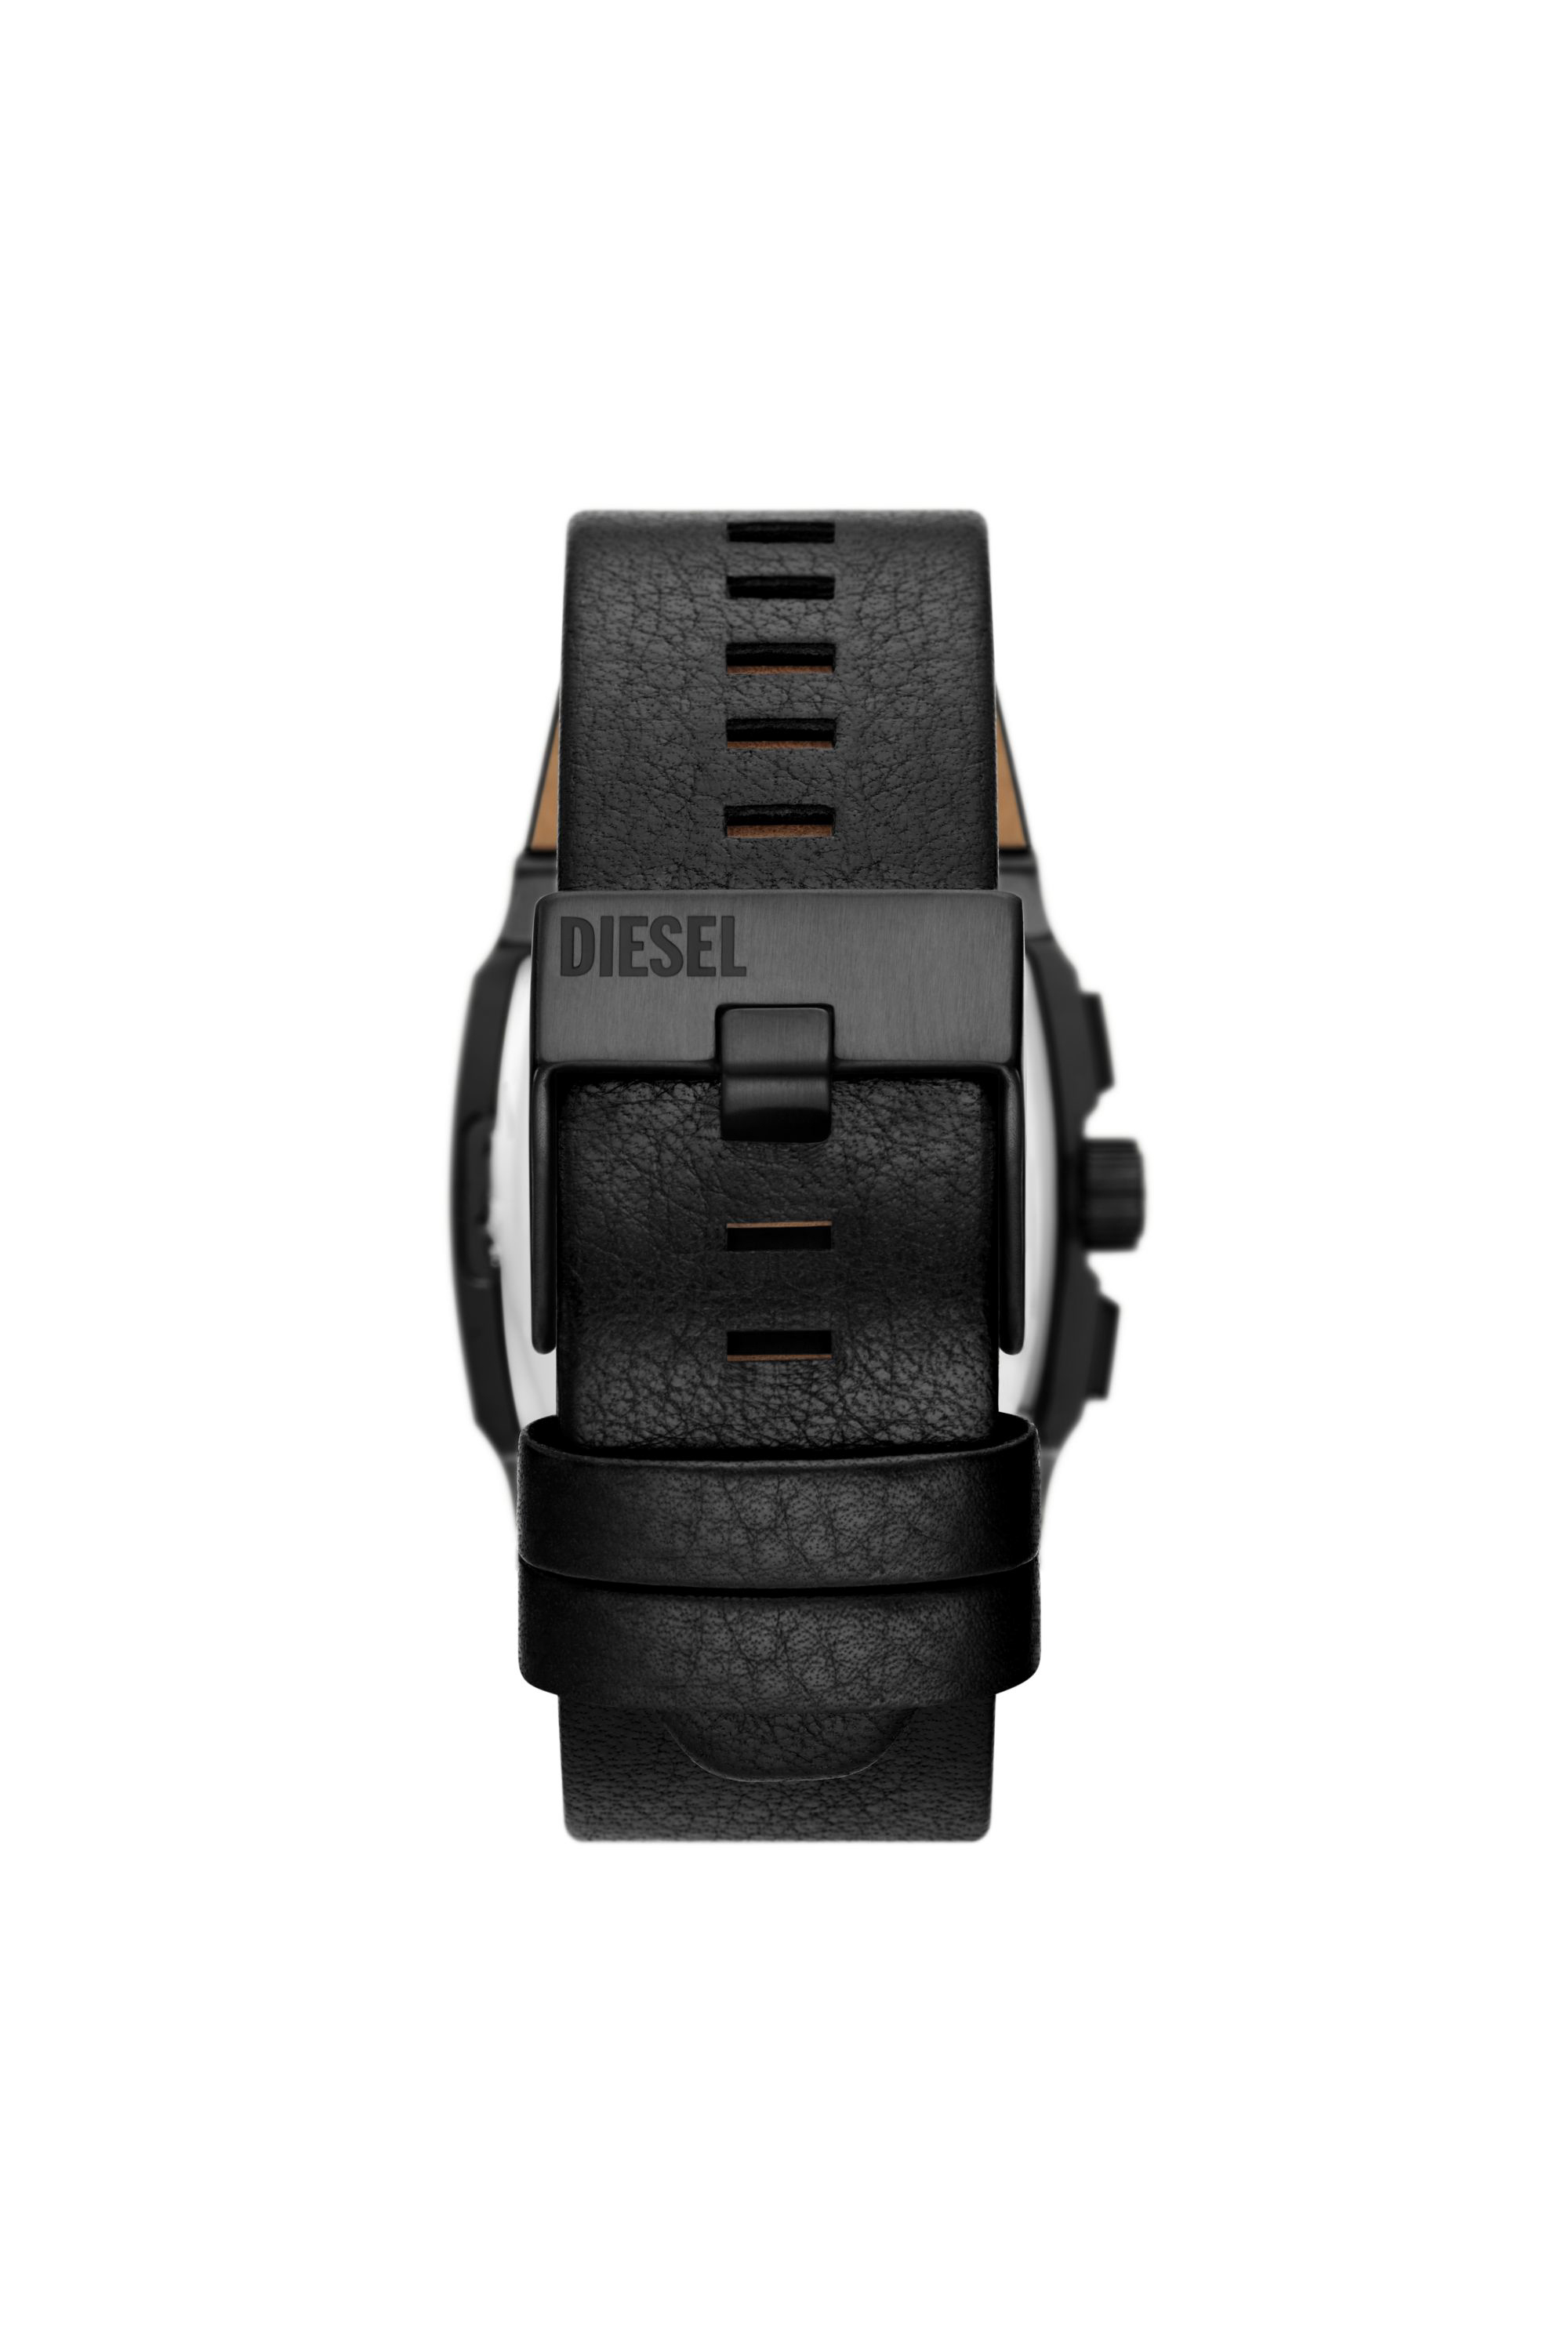 Diesel - DZ4645, Man Cliffhanger chronograph black leather watch in Black - Image 2